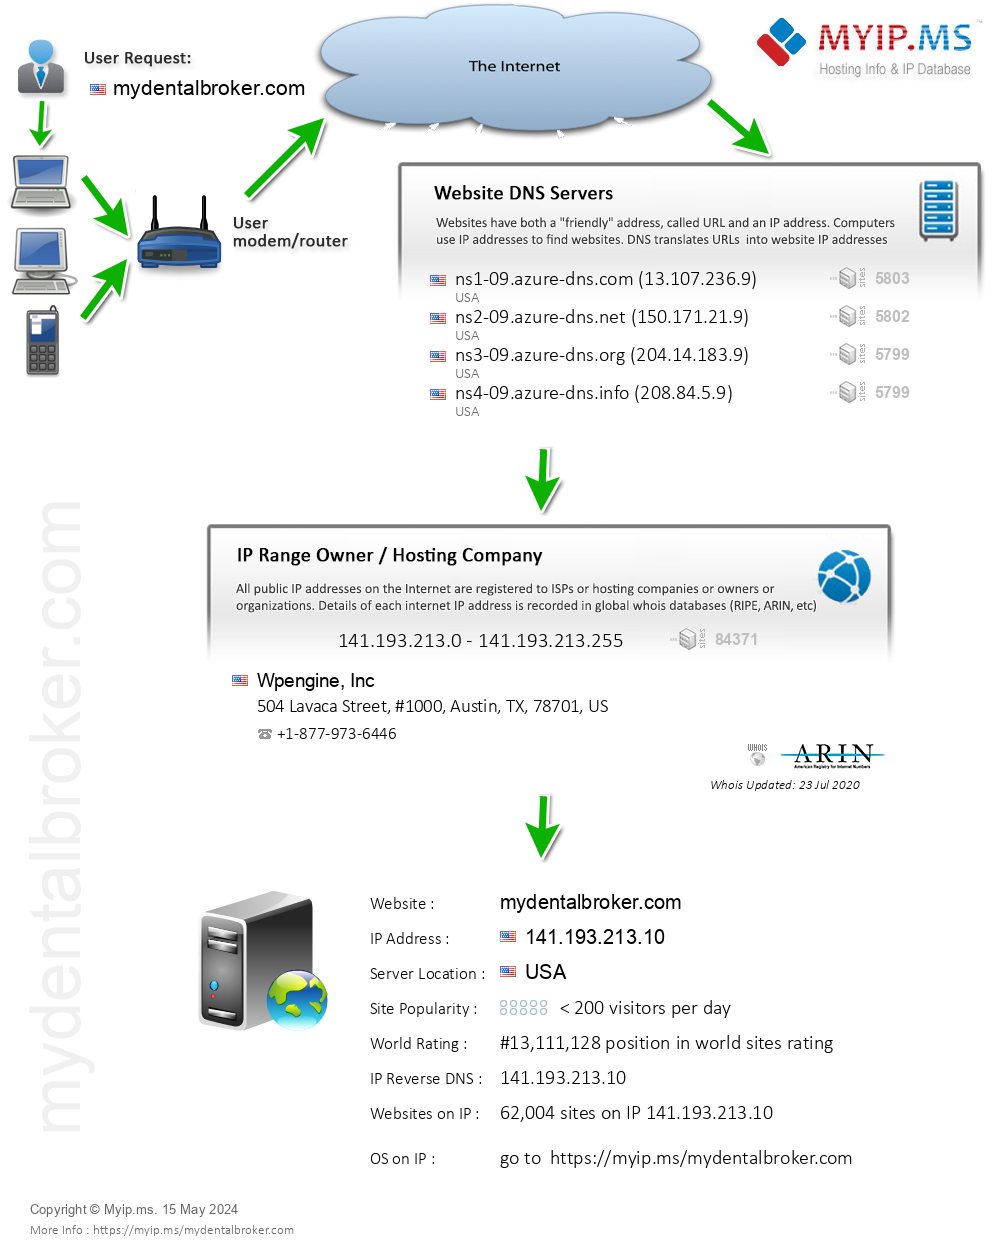 Mydentalbroker.com - Website Hosting Visual IP Diagram